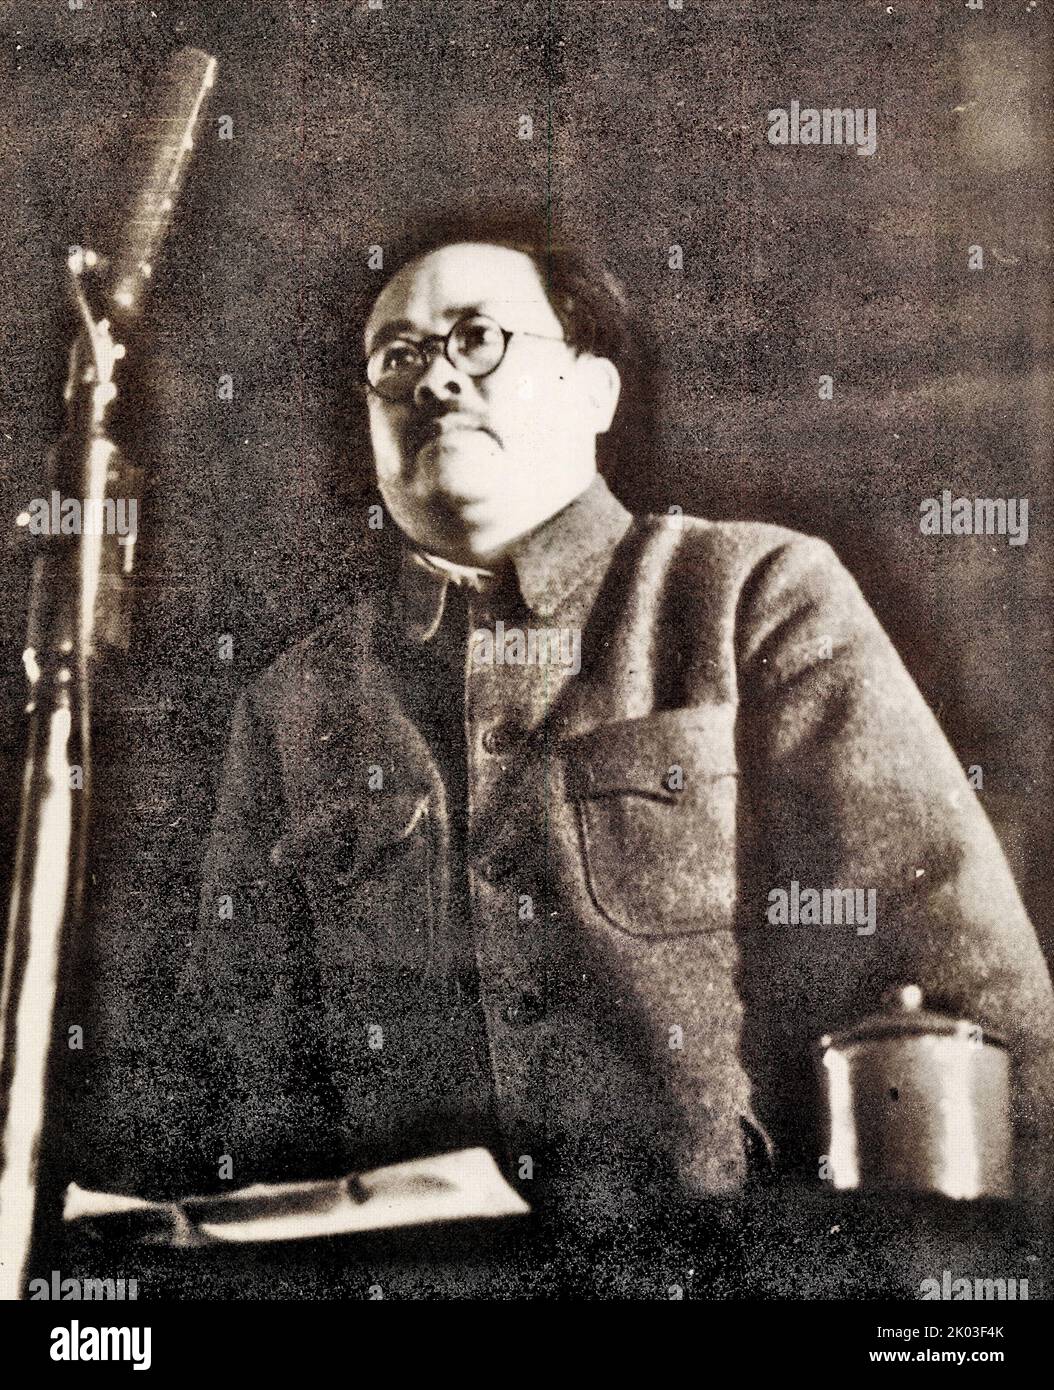 Während des langen marsches befand sich Ren Bishi in einem Bergdorf im Norden von Shaanxi. Ren Bishi war ein militärischer und politischer Führer in der frühen Kommunistischen Partei Chinas. Anfang 1930s Stockfoto